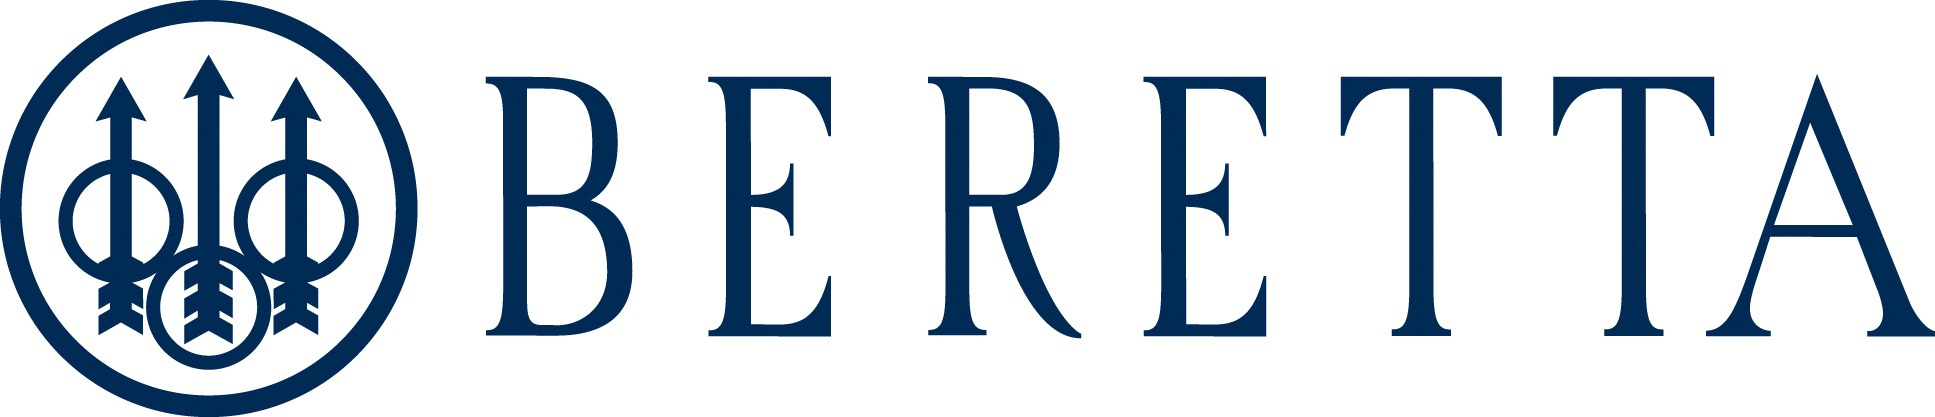 Beretta Logos